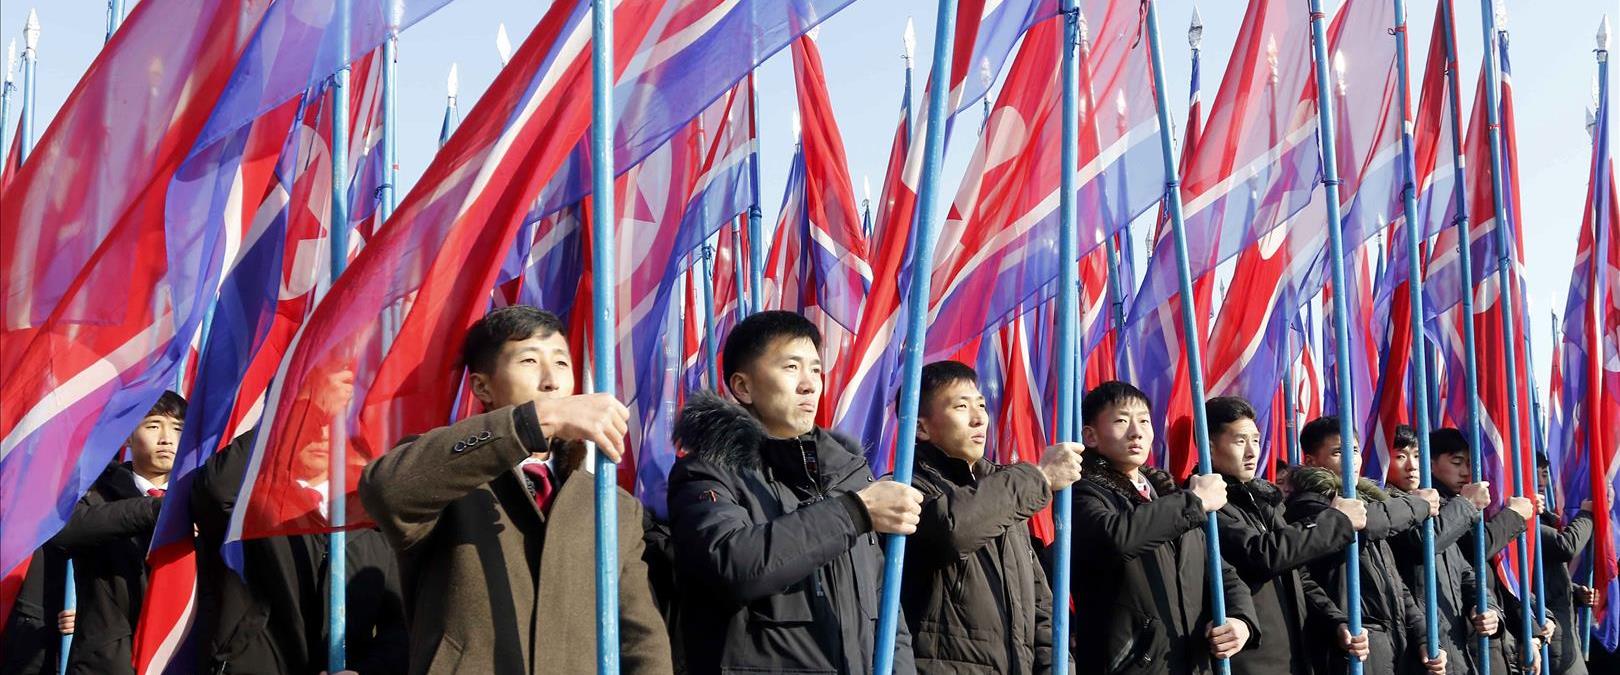 עצרת הזדהות עם המנהיג בקוריאה הצפונית, השבוע